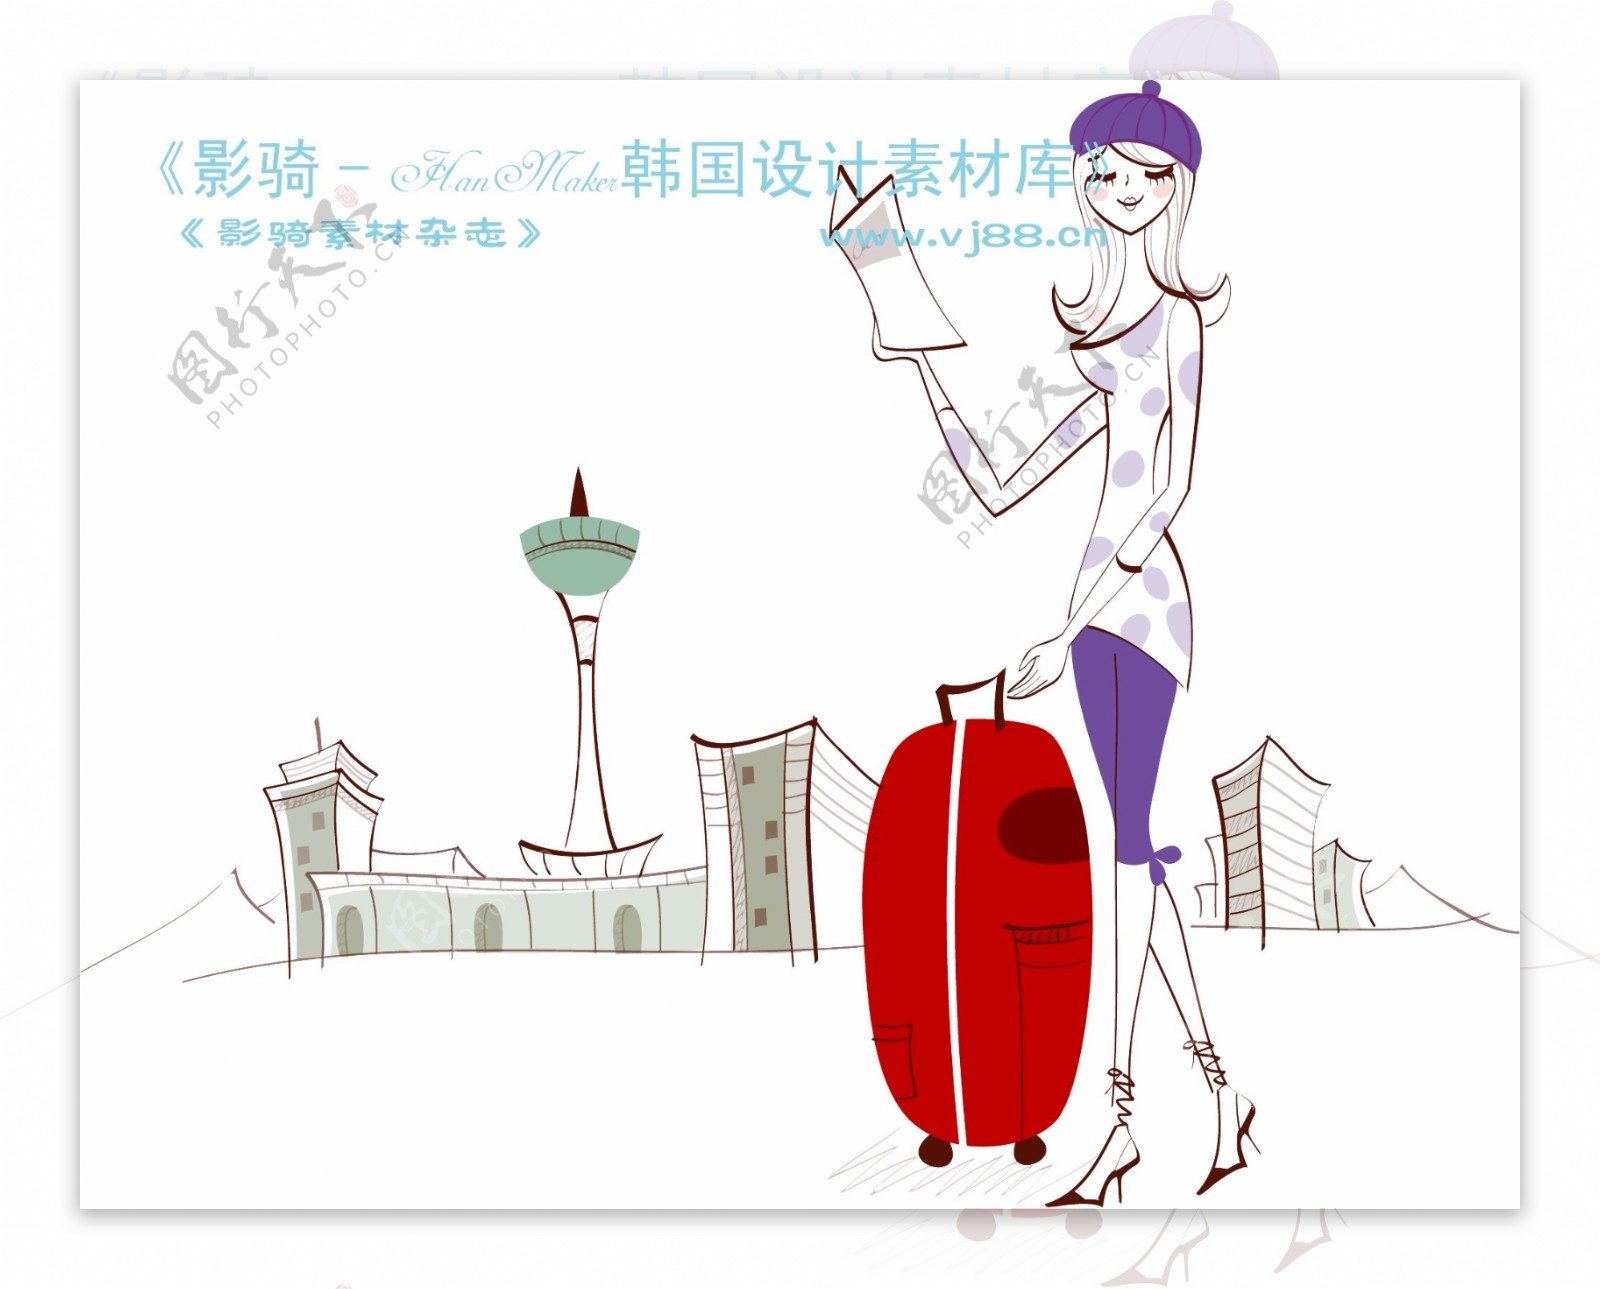 城市时尚生活矢量素材矢量图片HanMaker韩国设计素材库